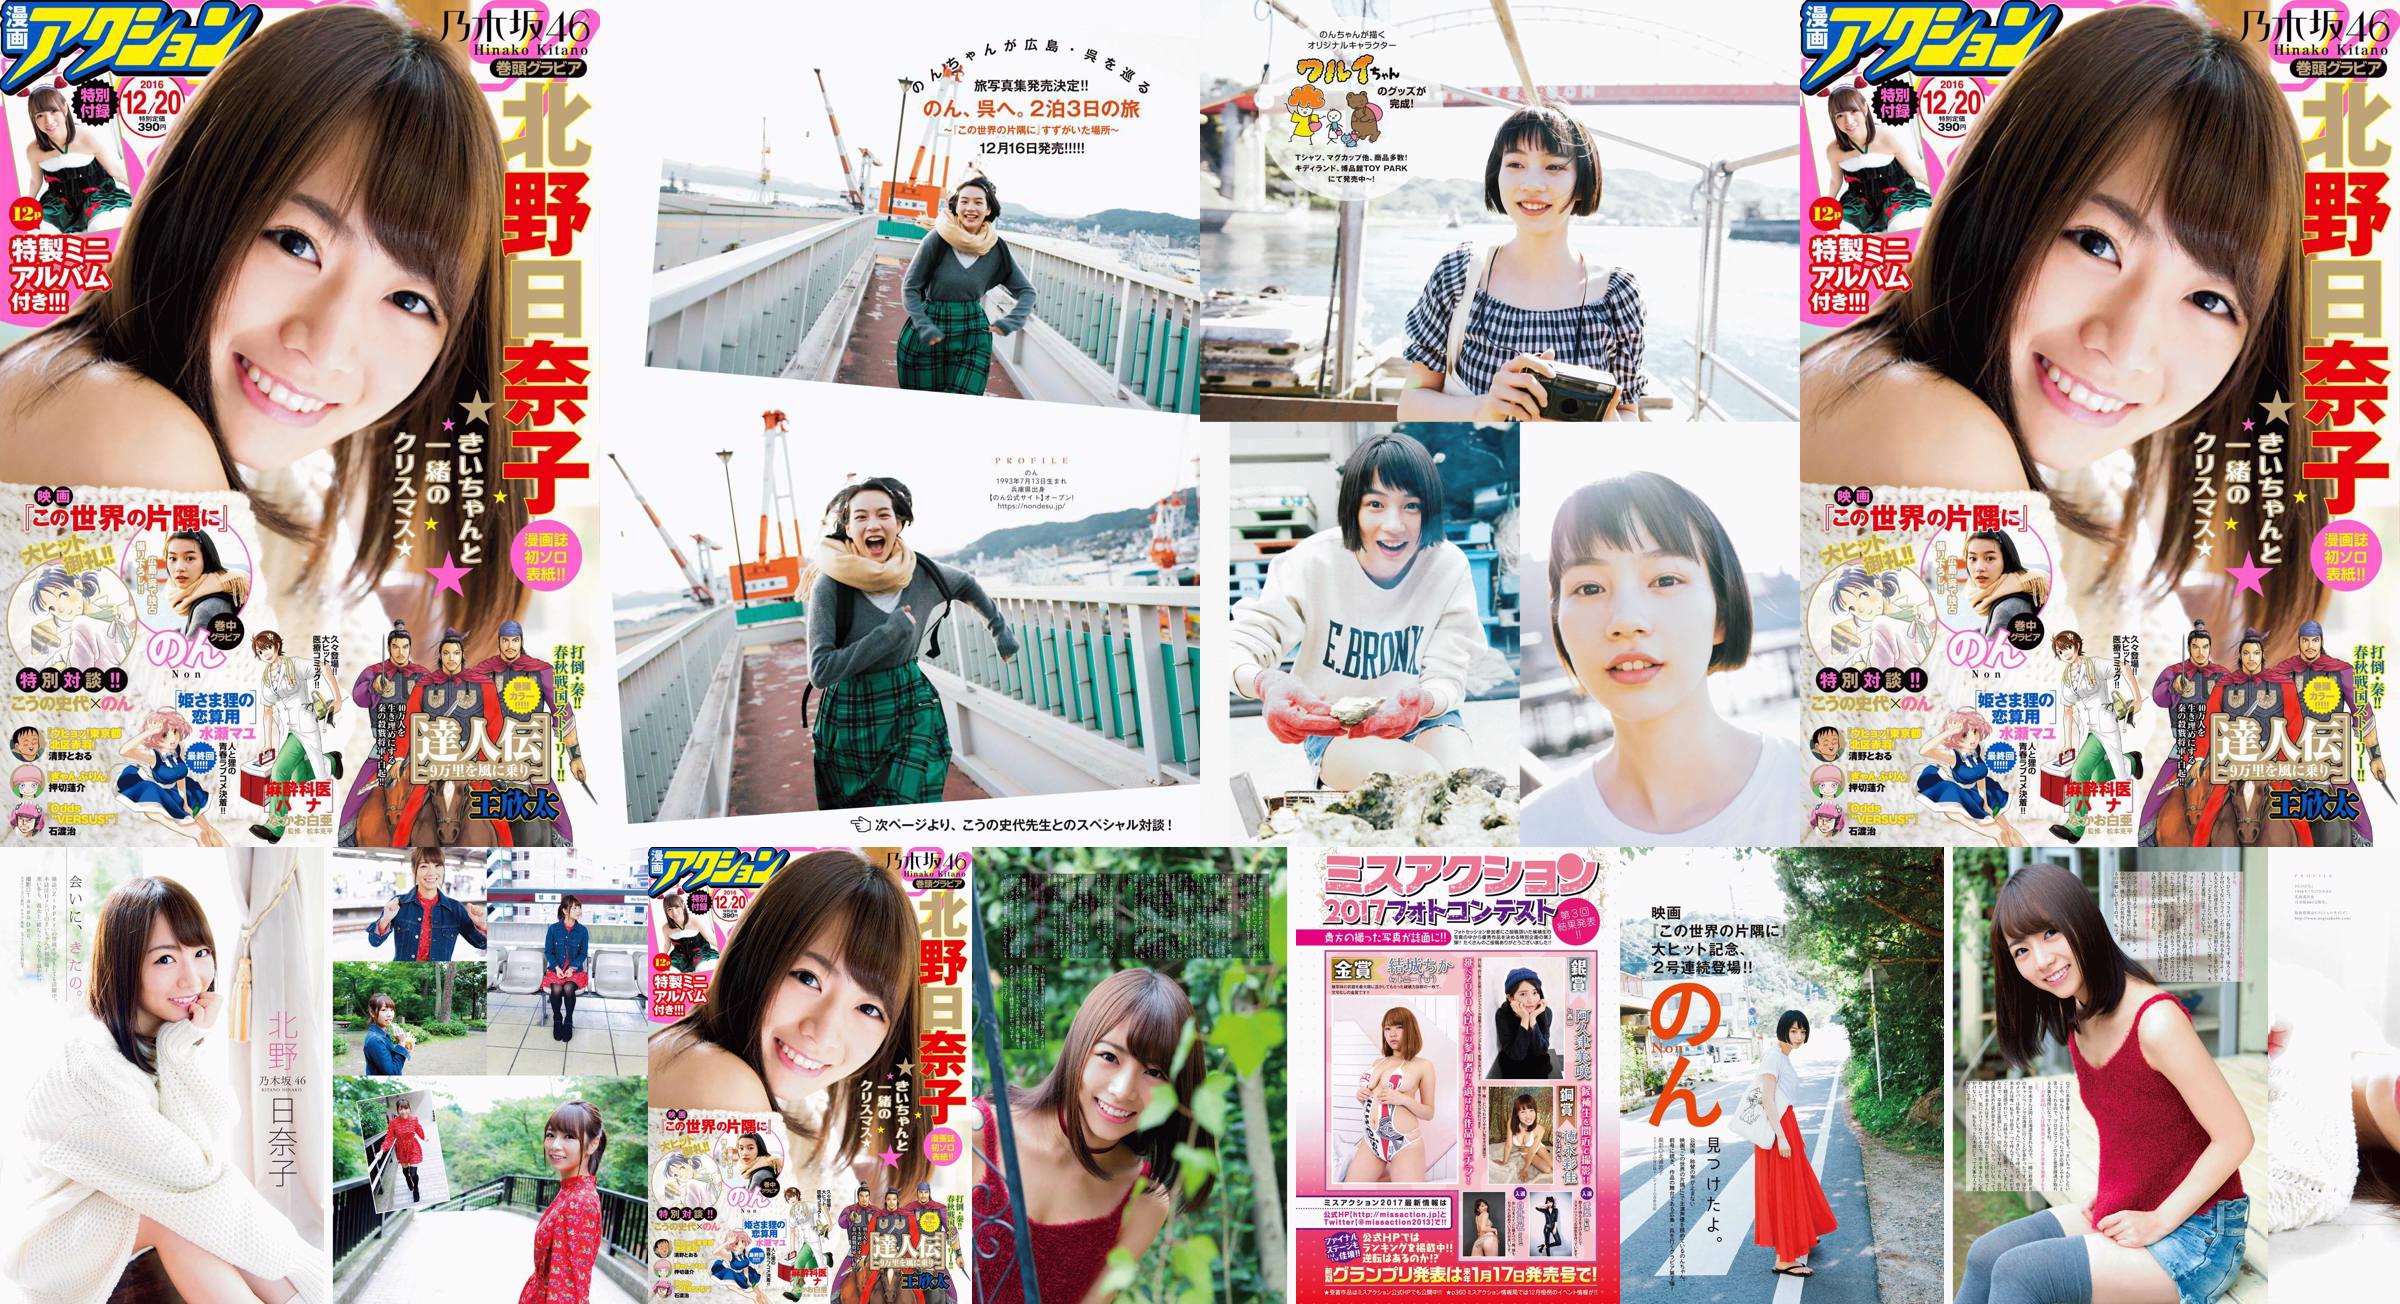 [Manga Action] Kitano Hinako のん 2016 No.24 Photo Magazine No.0e6f26 Página 1